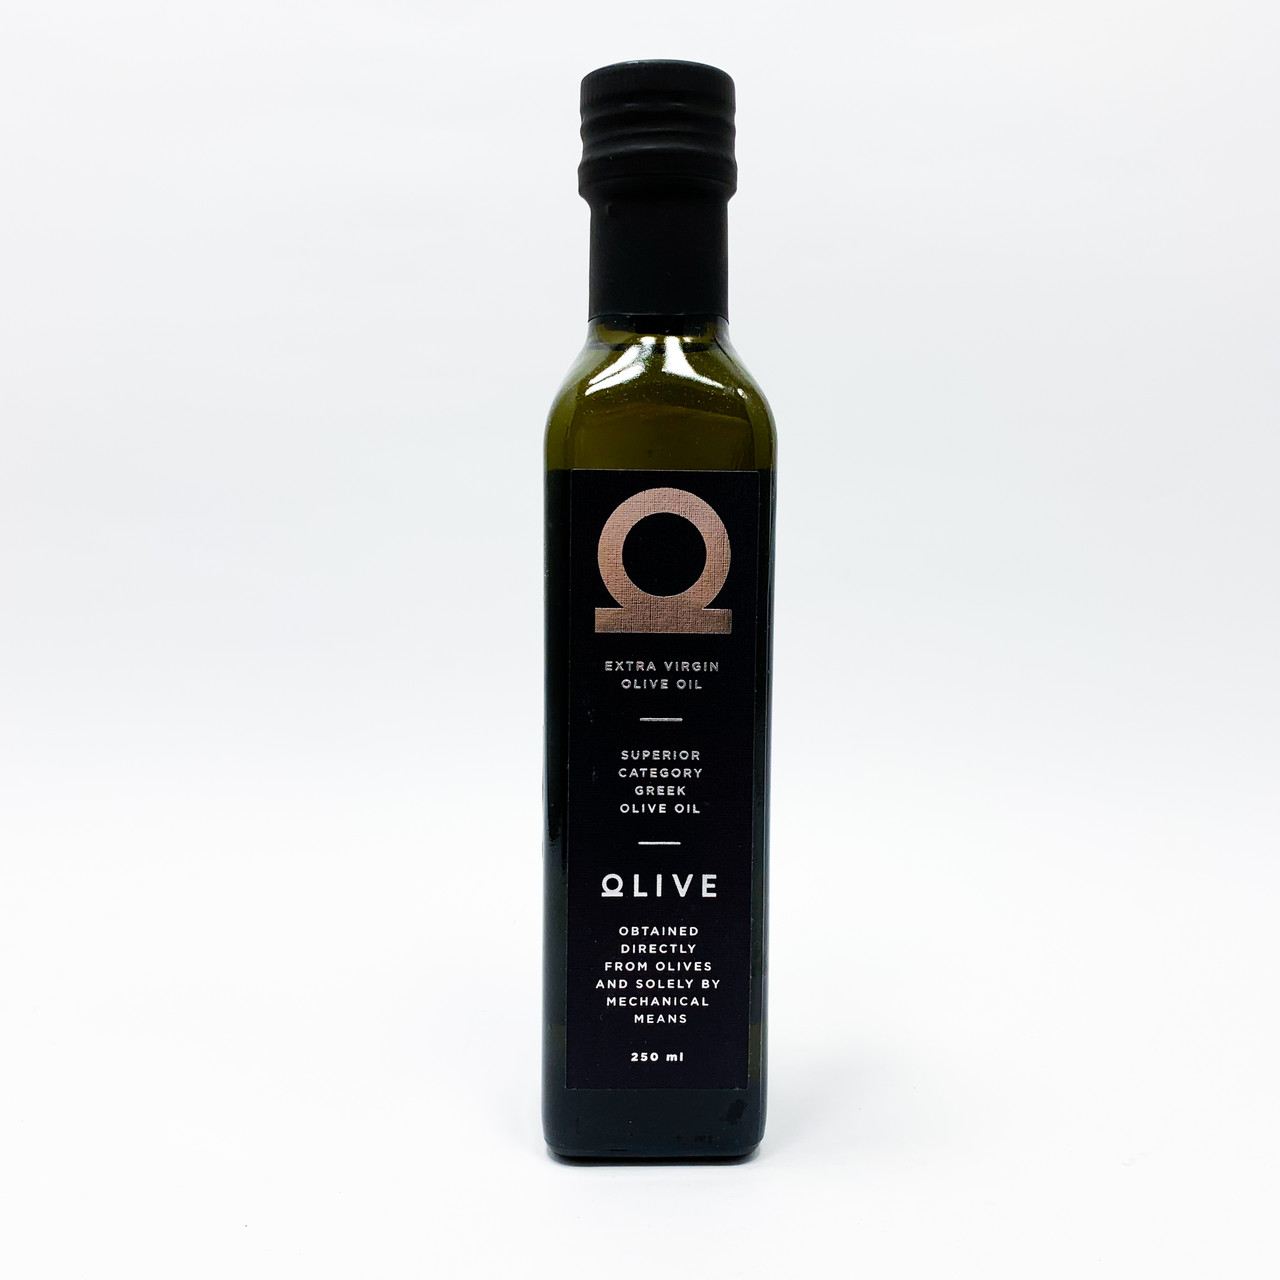 Масло оливкового Экстра Вирджин Оливе отл, Олимп 250 мл. Грузинское оливковое масло. Bonito масло оливковое. Ги оливкового масла.